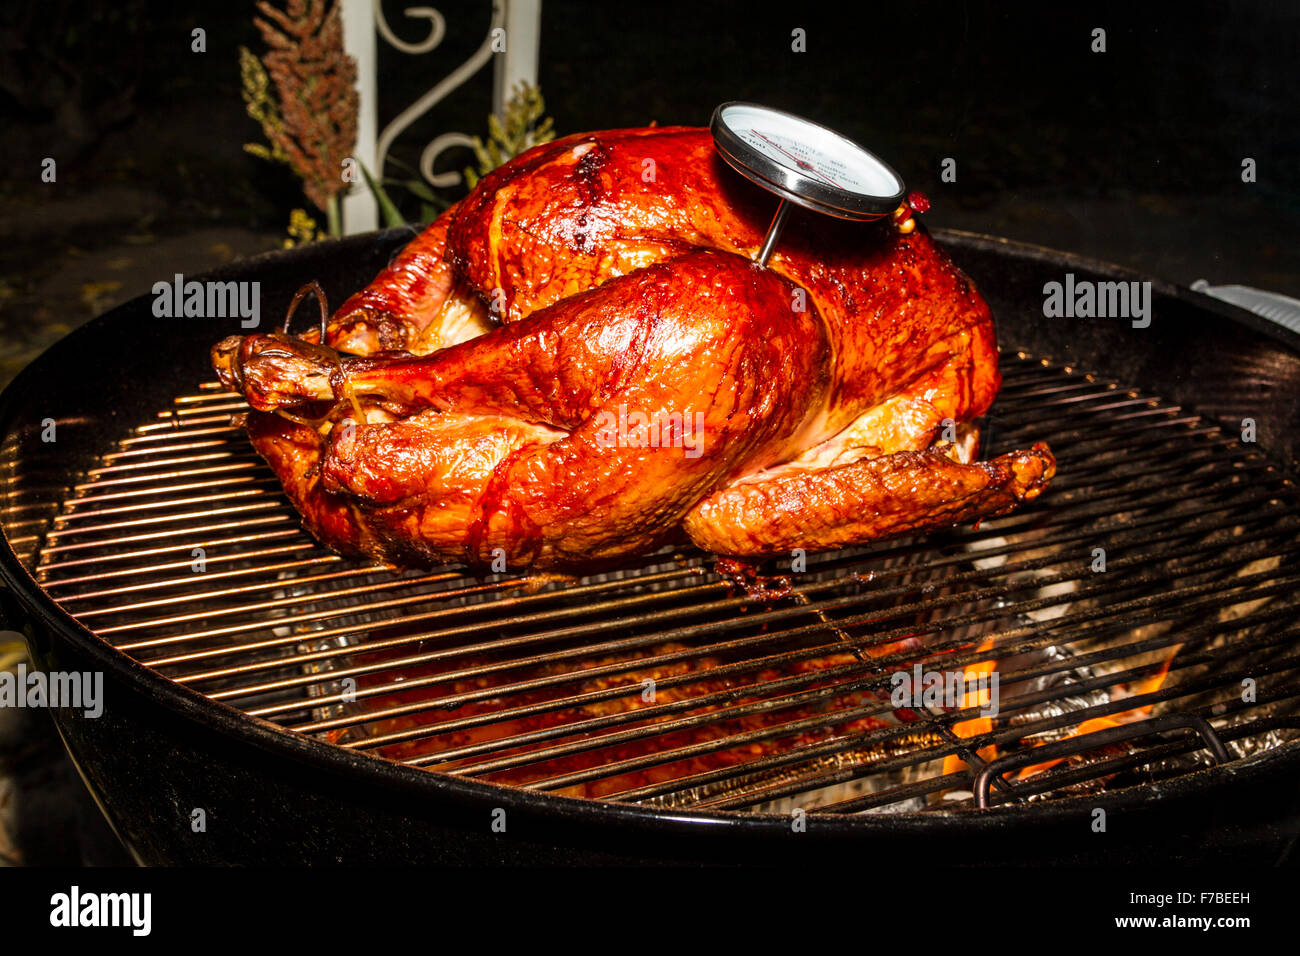 Un sel rub brined dinde de Thanksgiving cuits sur un barbecue Weber électrique avec thermomètre à viande indique le degré de cuisson Banque D'Images